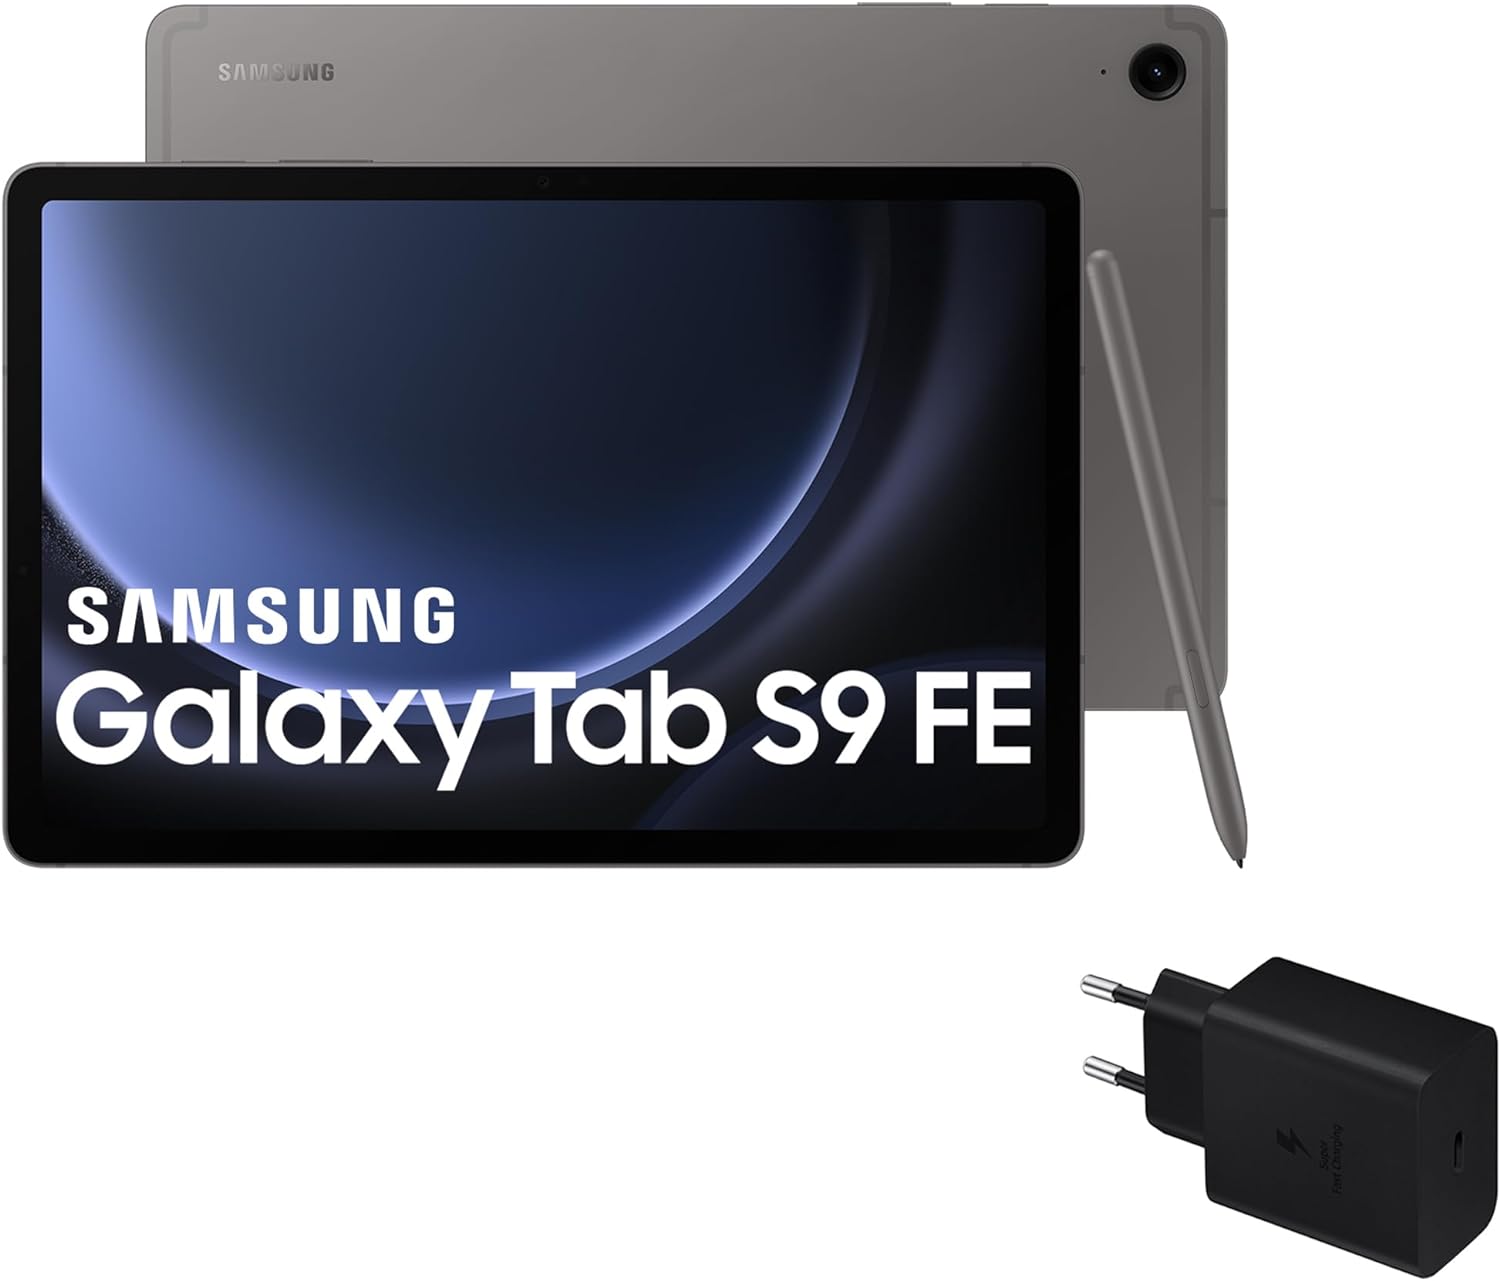 Samsung Galaxy Tab S9 FE vs Xiaomi Pad 6 vs Lenovo Tab P12